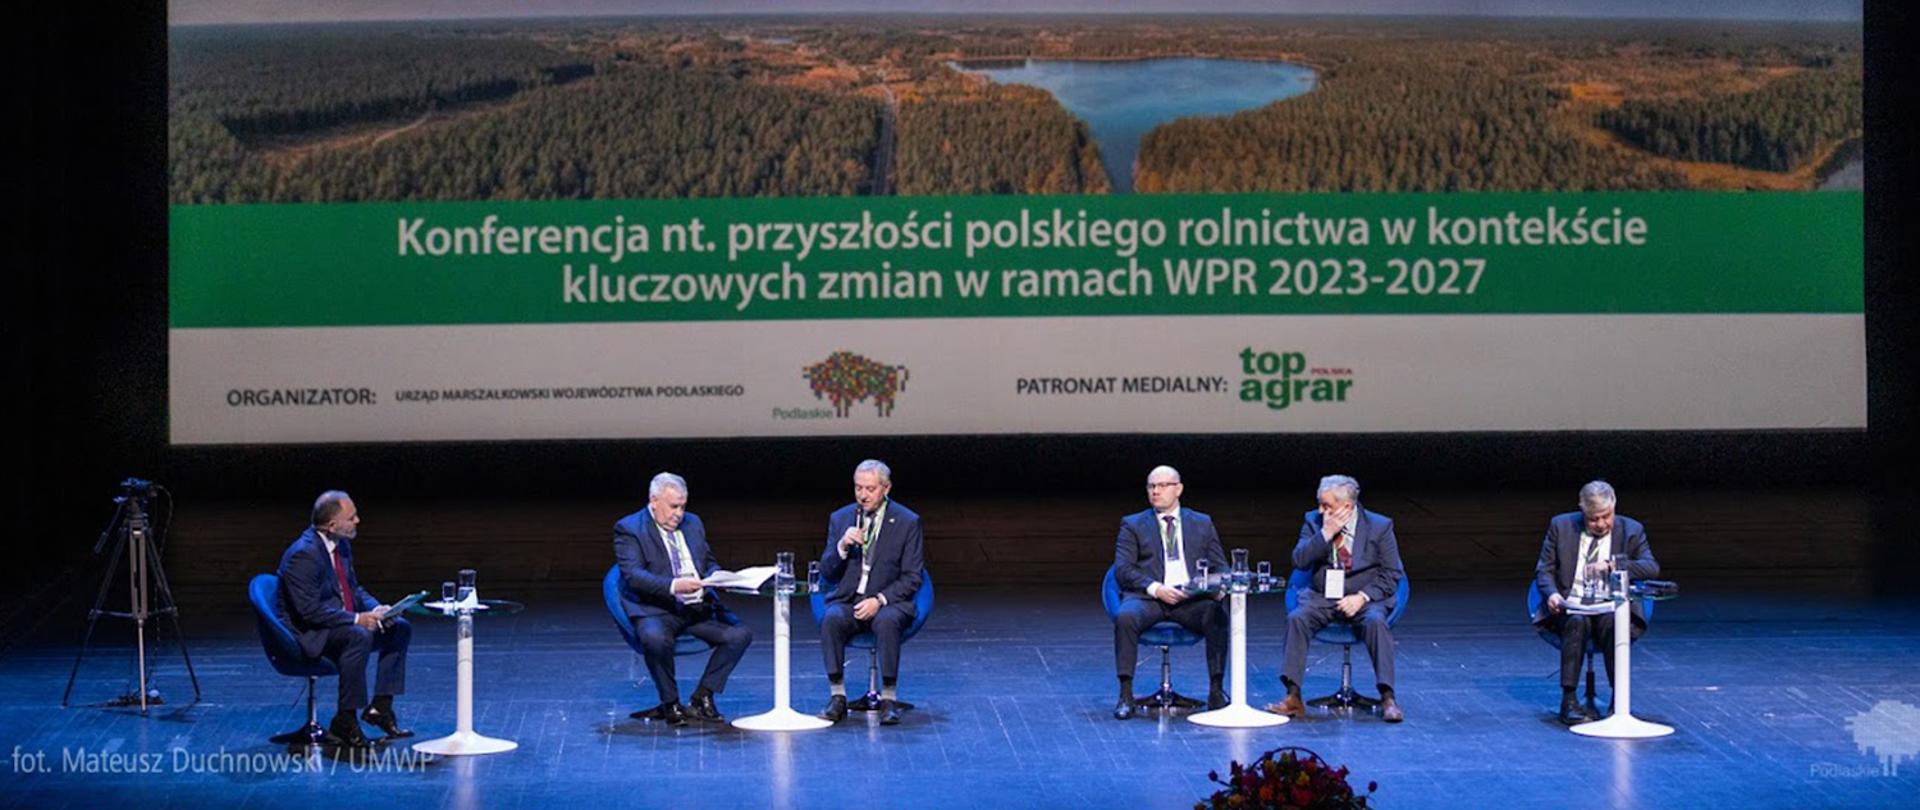 Uczestnicy konferencji na temat przyszłości polskiego rolnictwa
